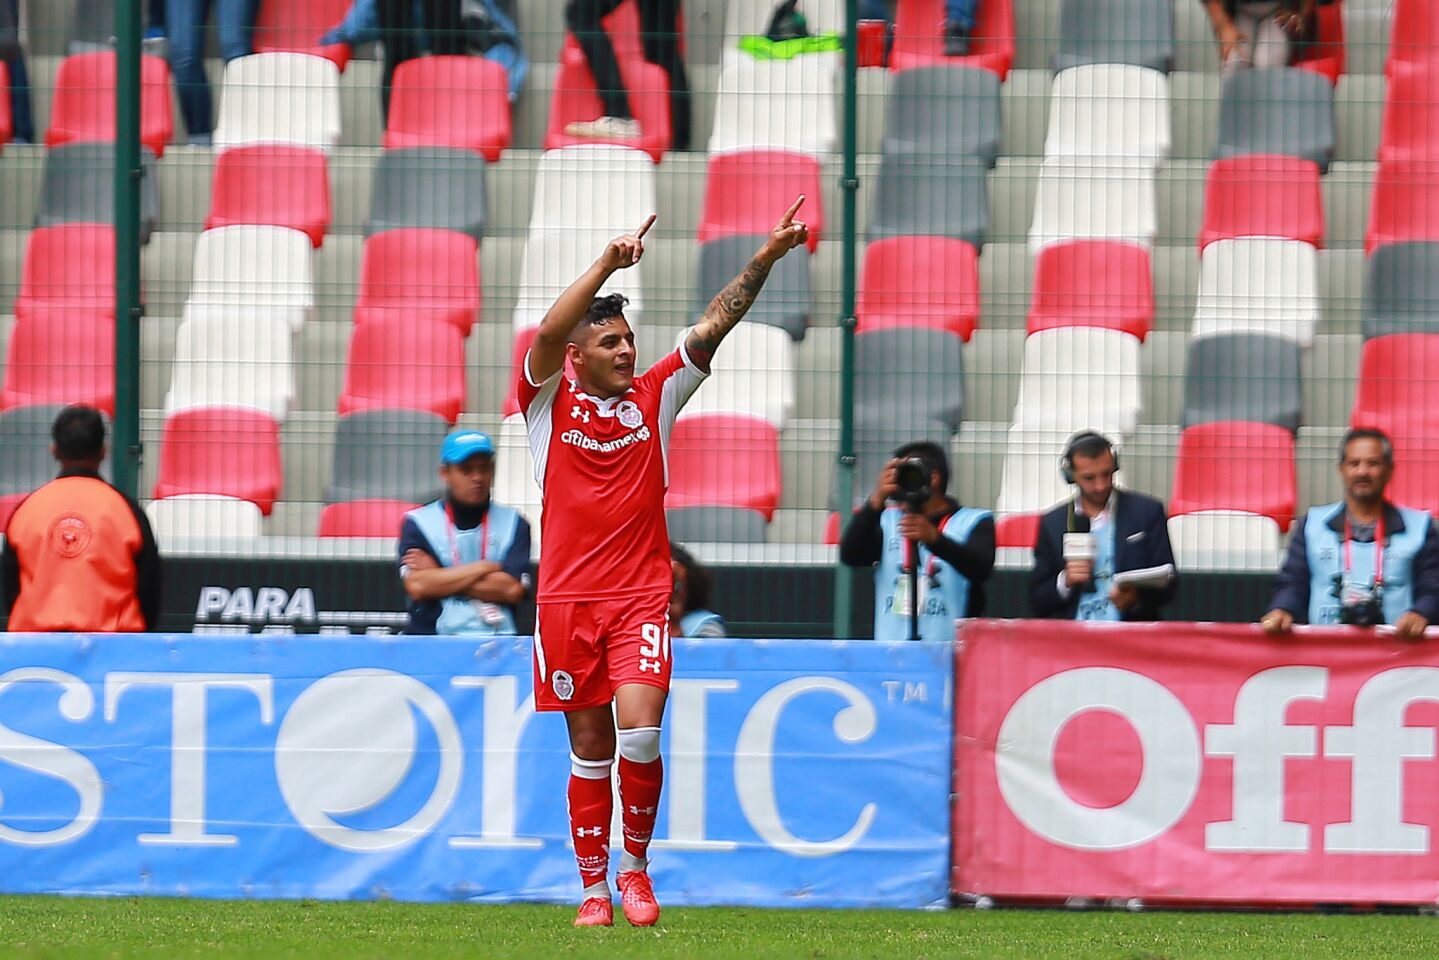 El delantero de Toluca Ernesto Vega celebra tras anotar uno de los goles en la victoria por 3-0 ante los Xolos de Tijuana.